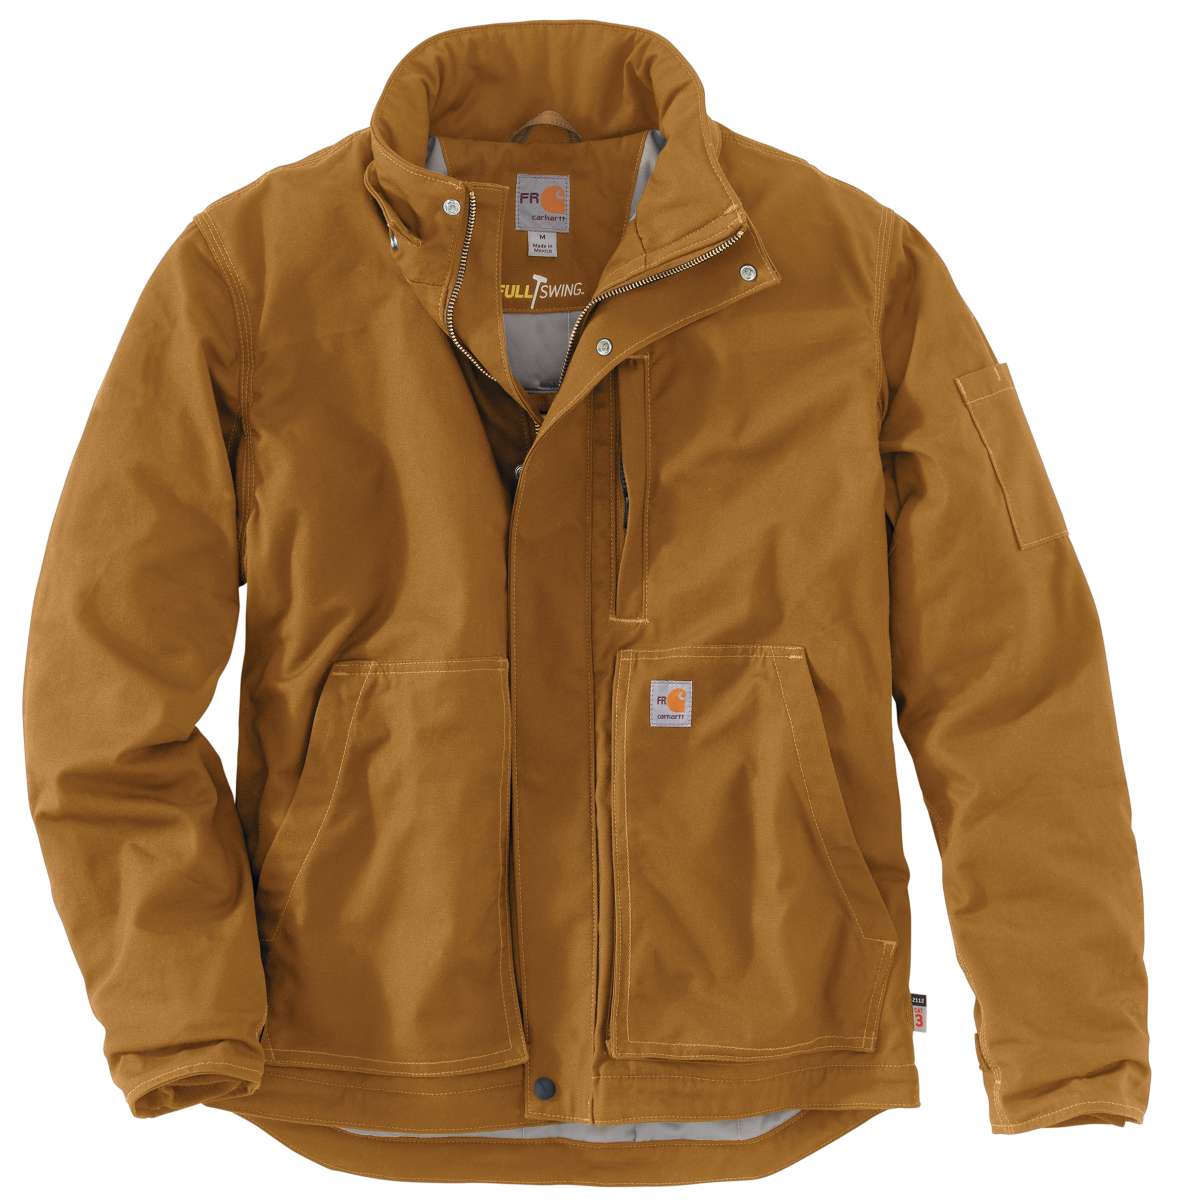 102692 - Carhartt Men's Full Swing Quick Duck Flame-Resistant Jacket